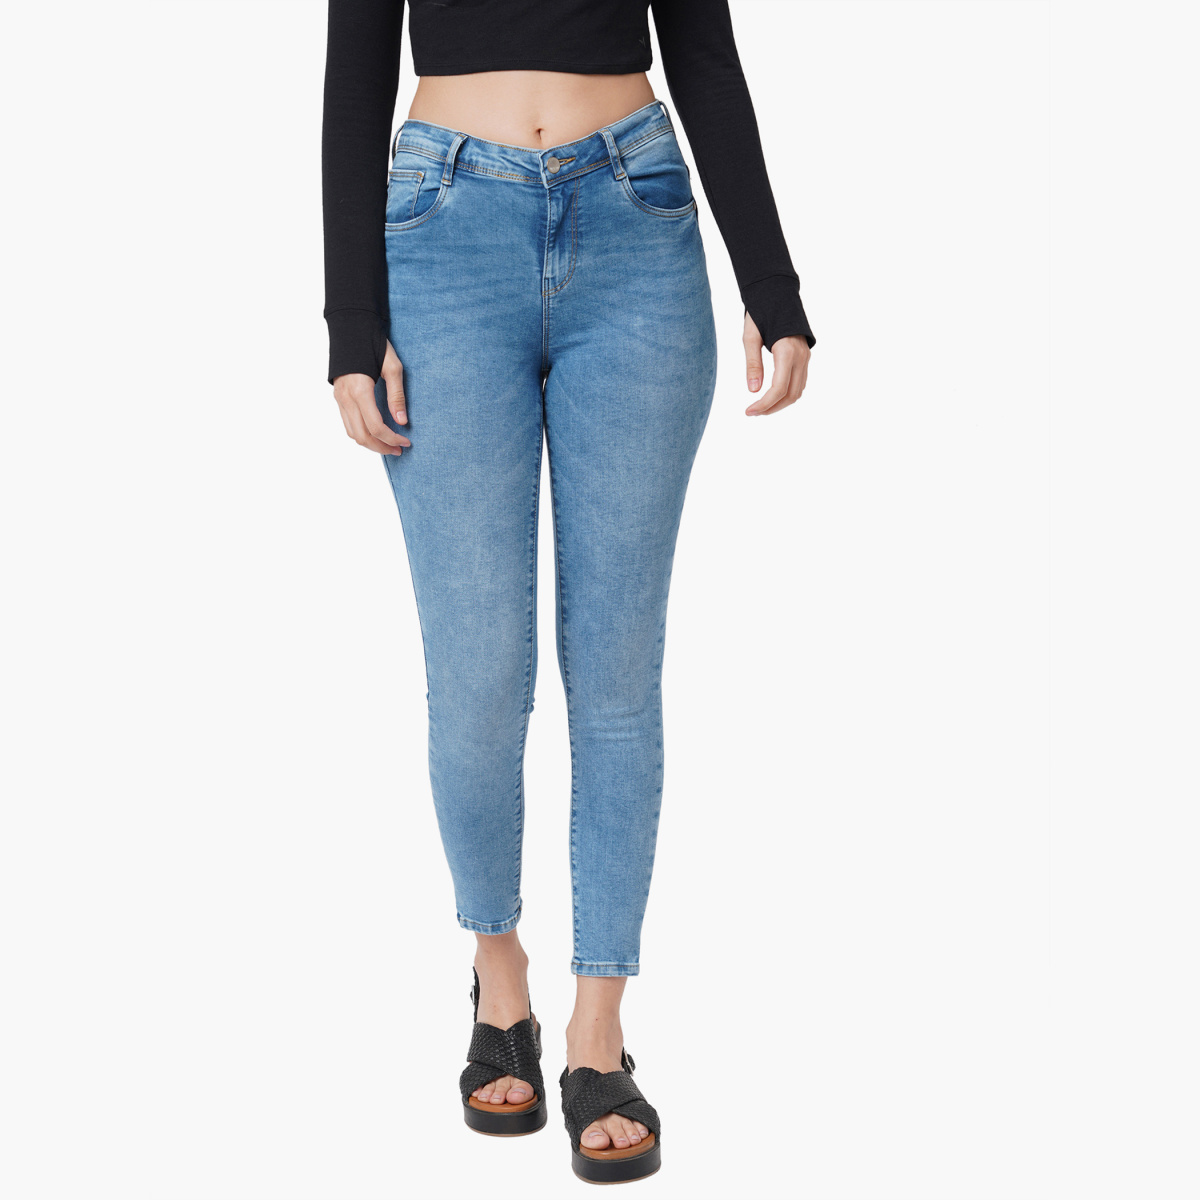 KRAUS Women Stonewashed Skinny Fit Jeans